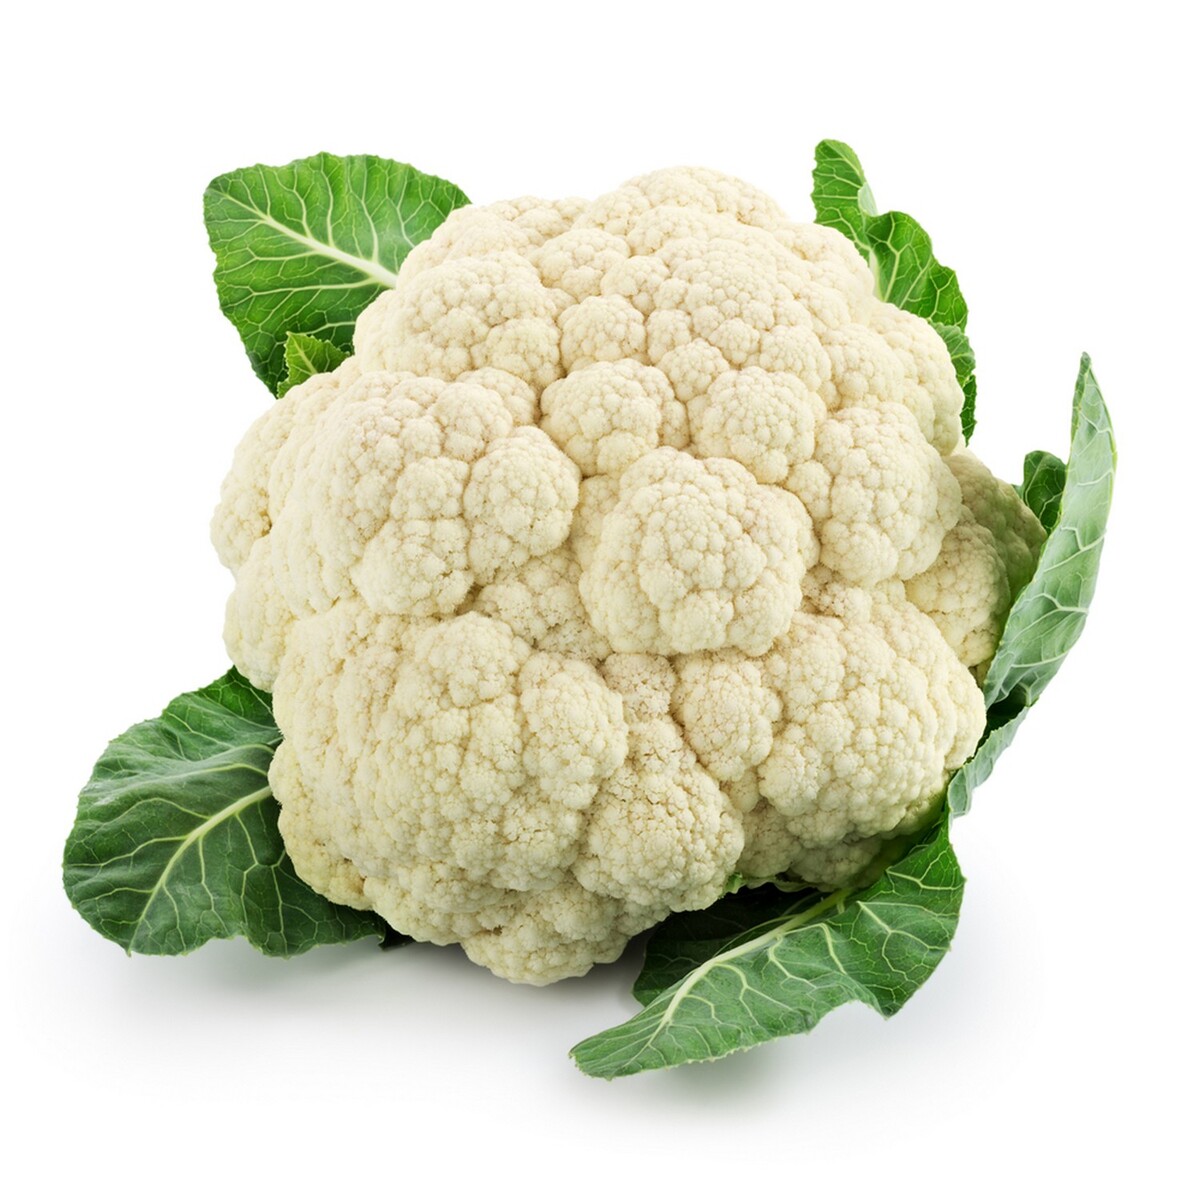 Cauliflower Approx. 800g to 900g